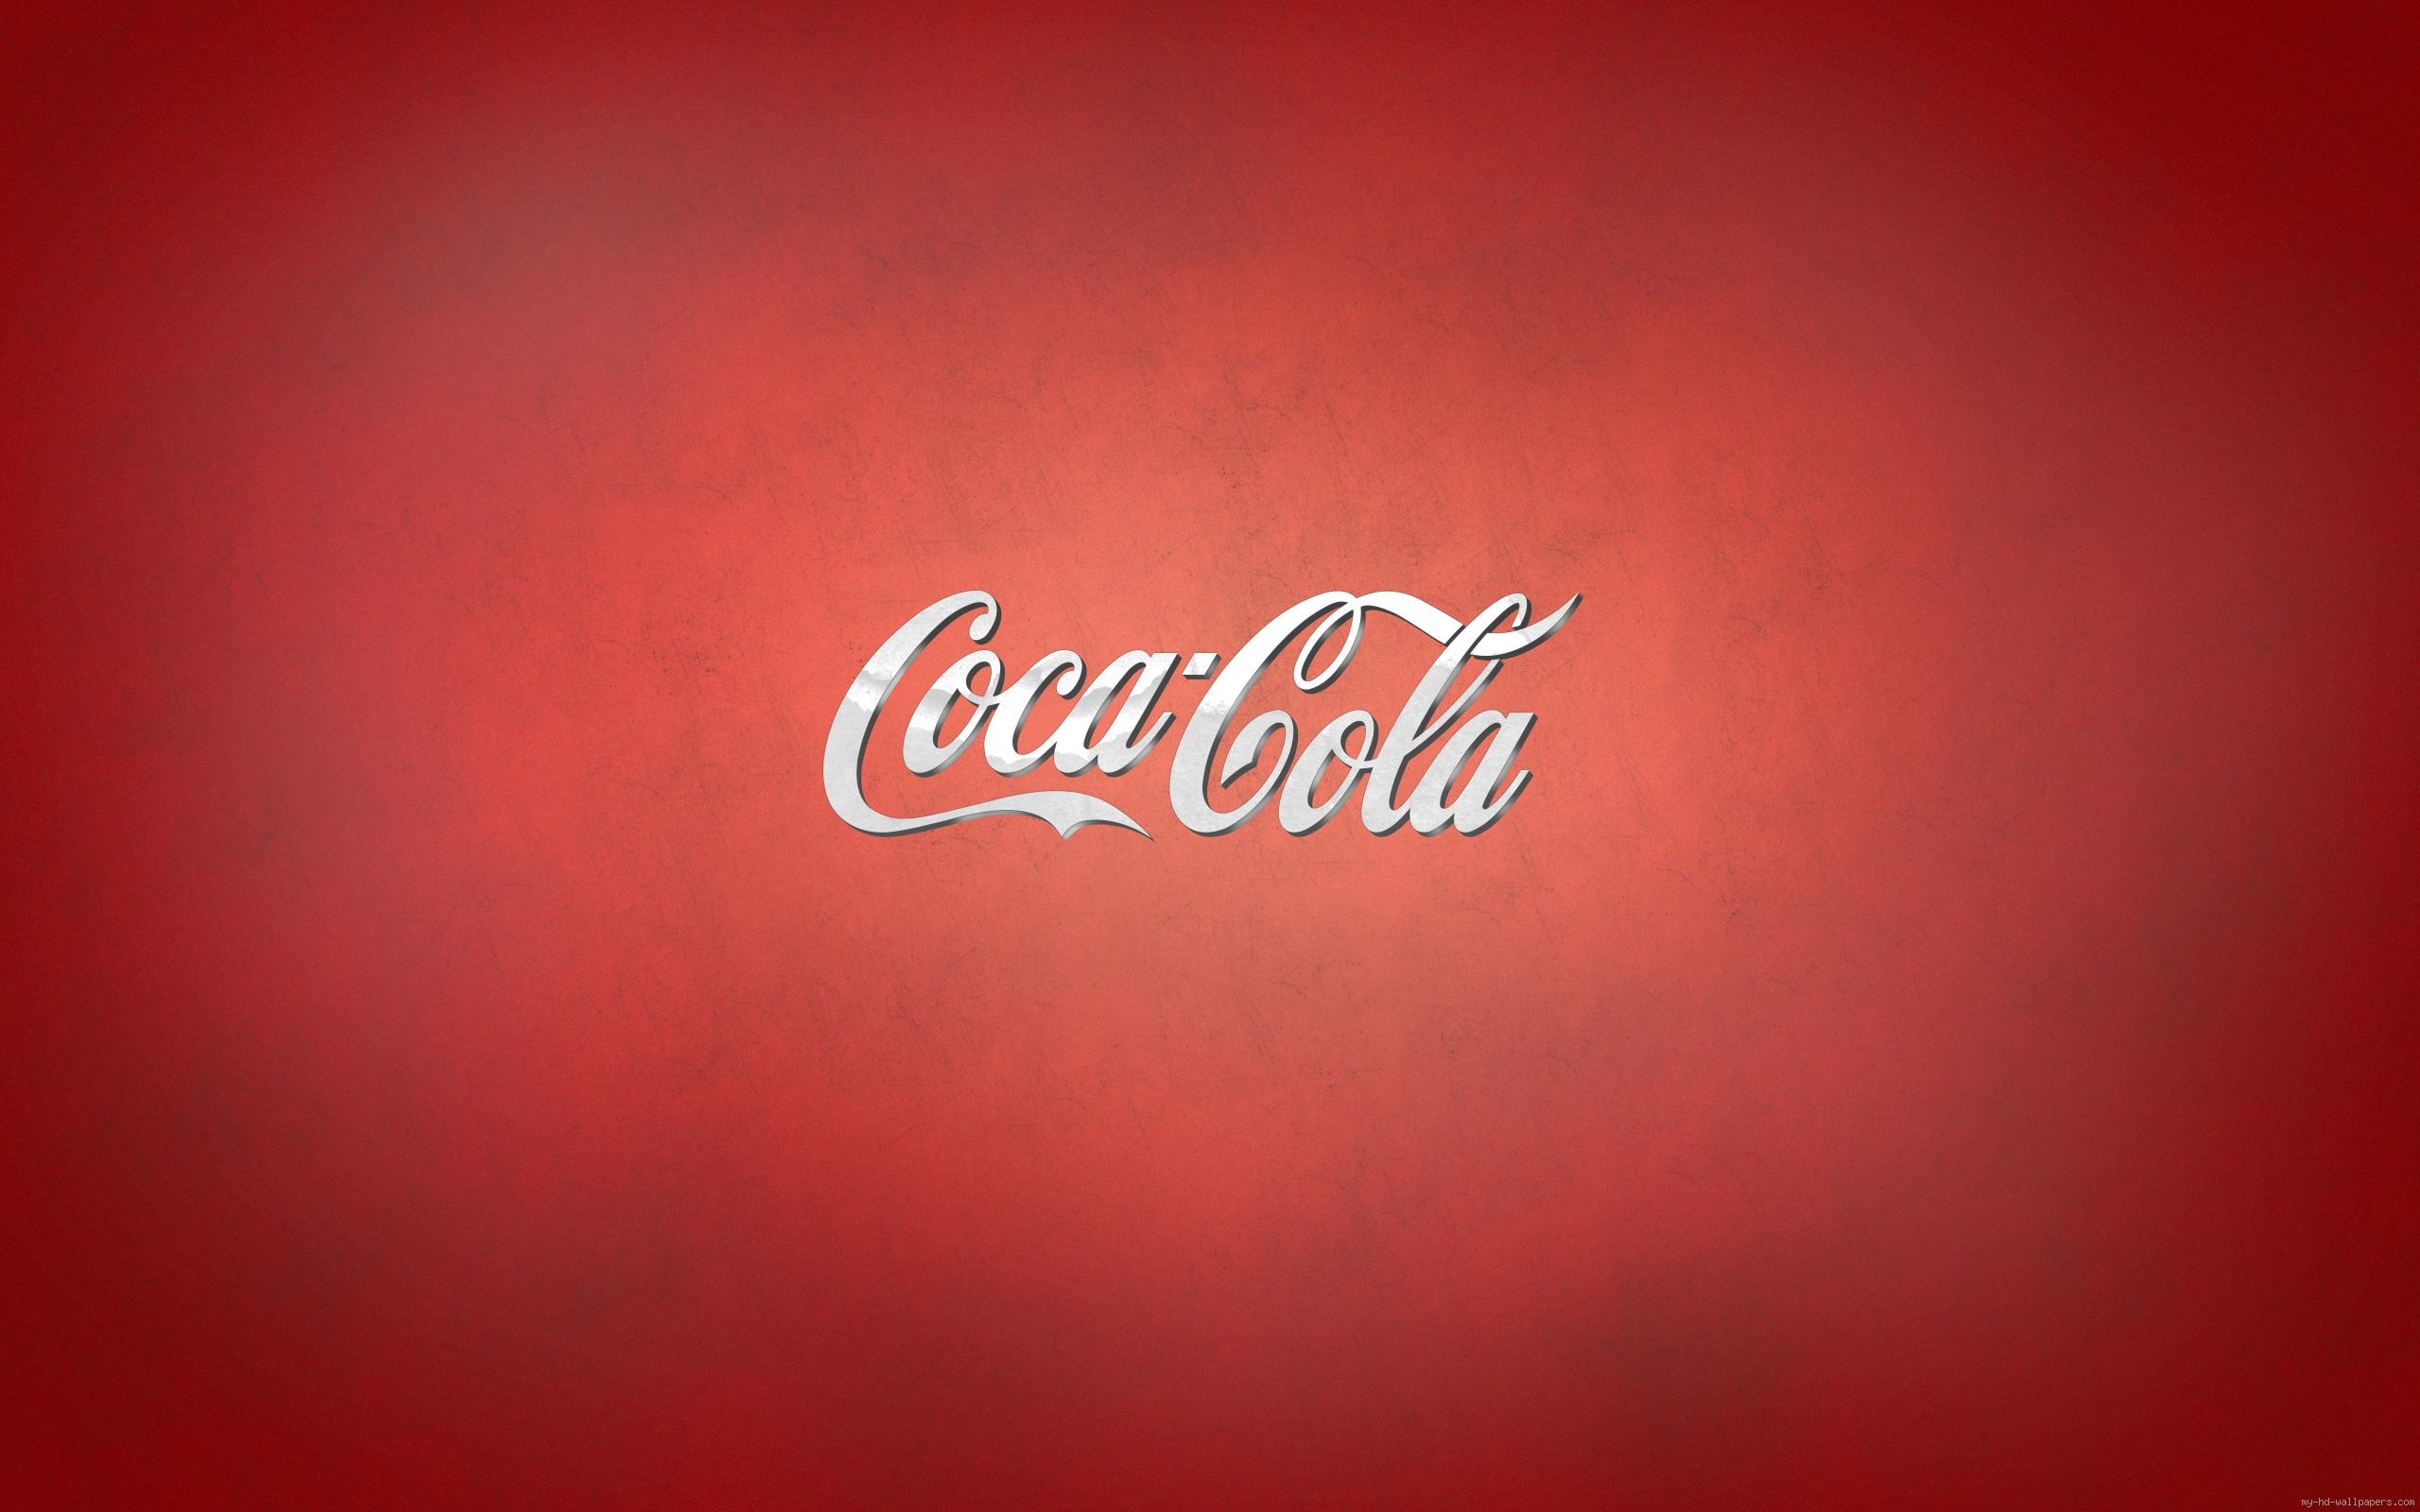 可口可乐各国logo图片